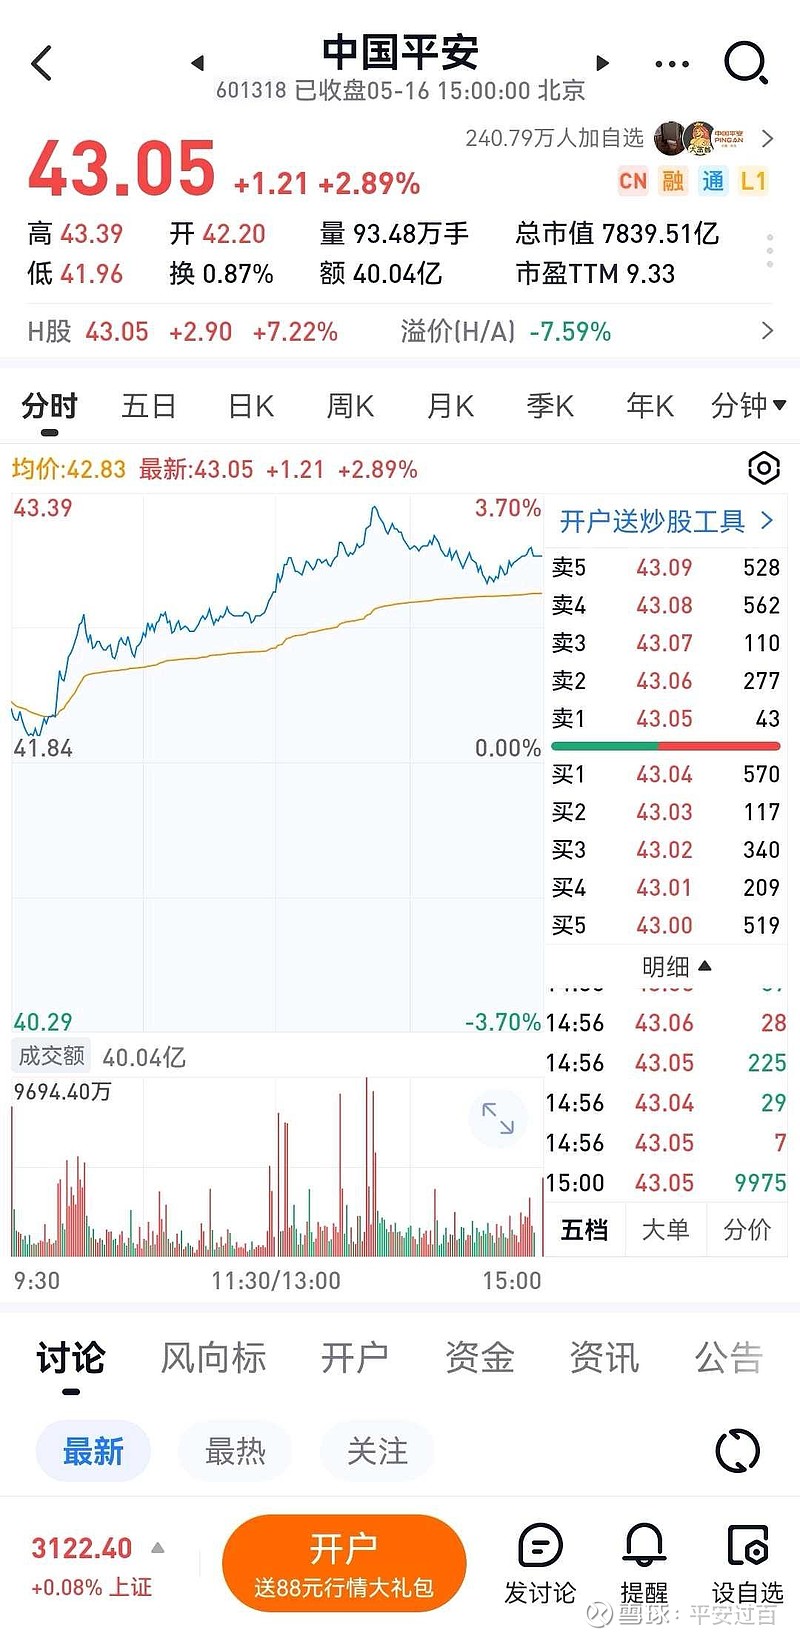 今天 中国平安 H股大涨7.2